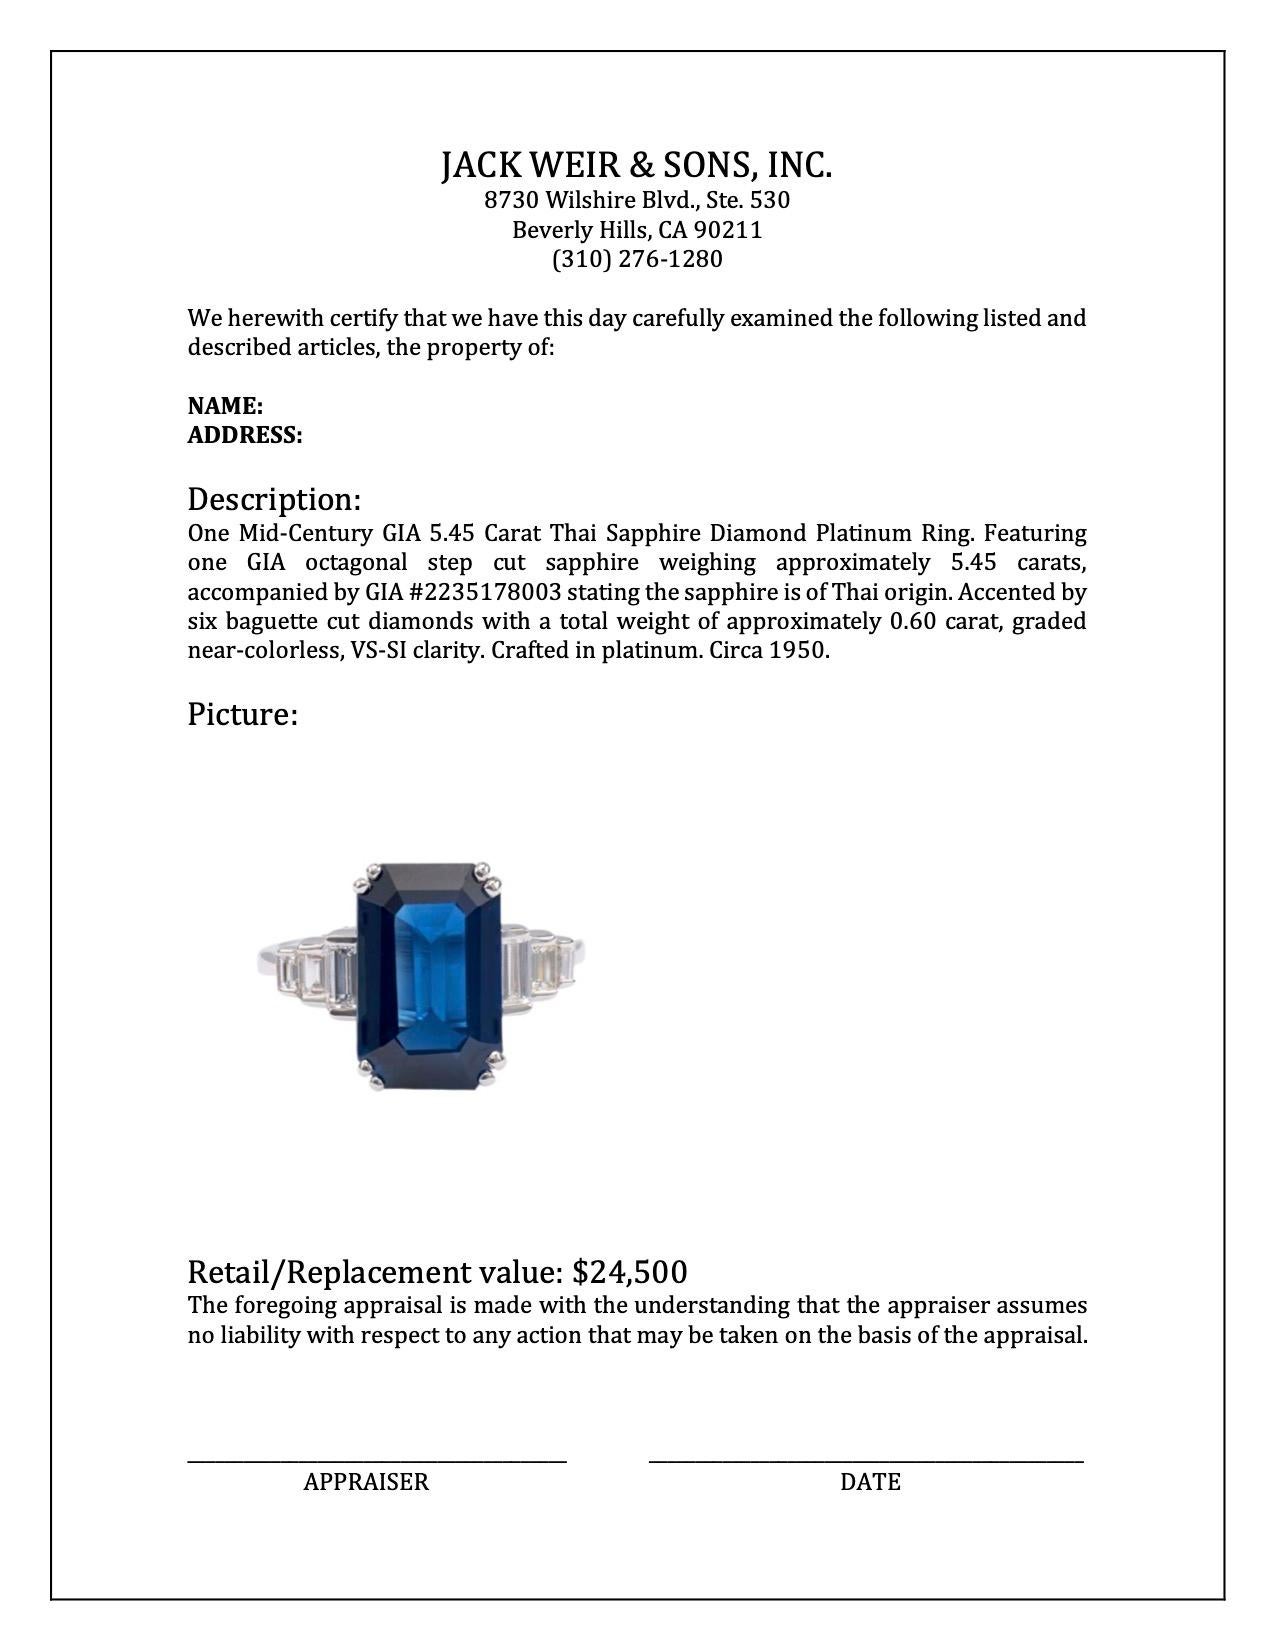 Mid-Century GIA 5.45 Carat Thai Sapphire Diamond Platinum Ring 2